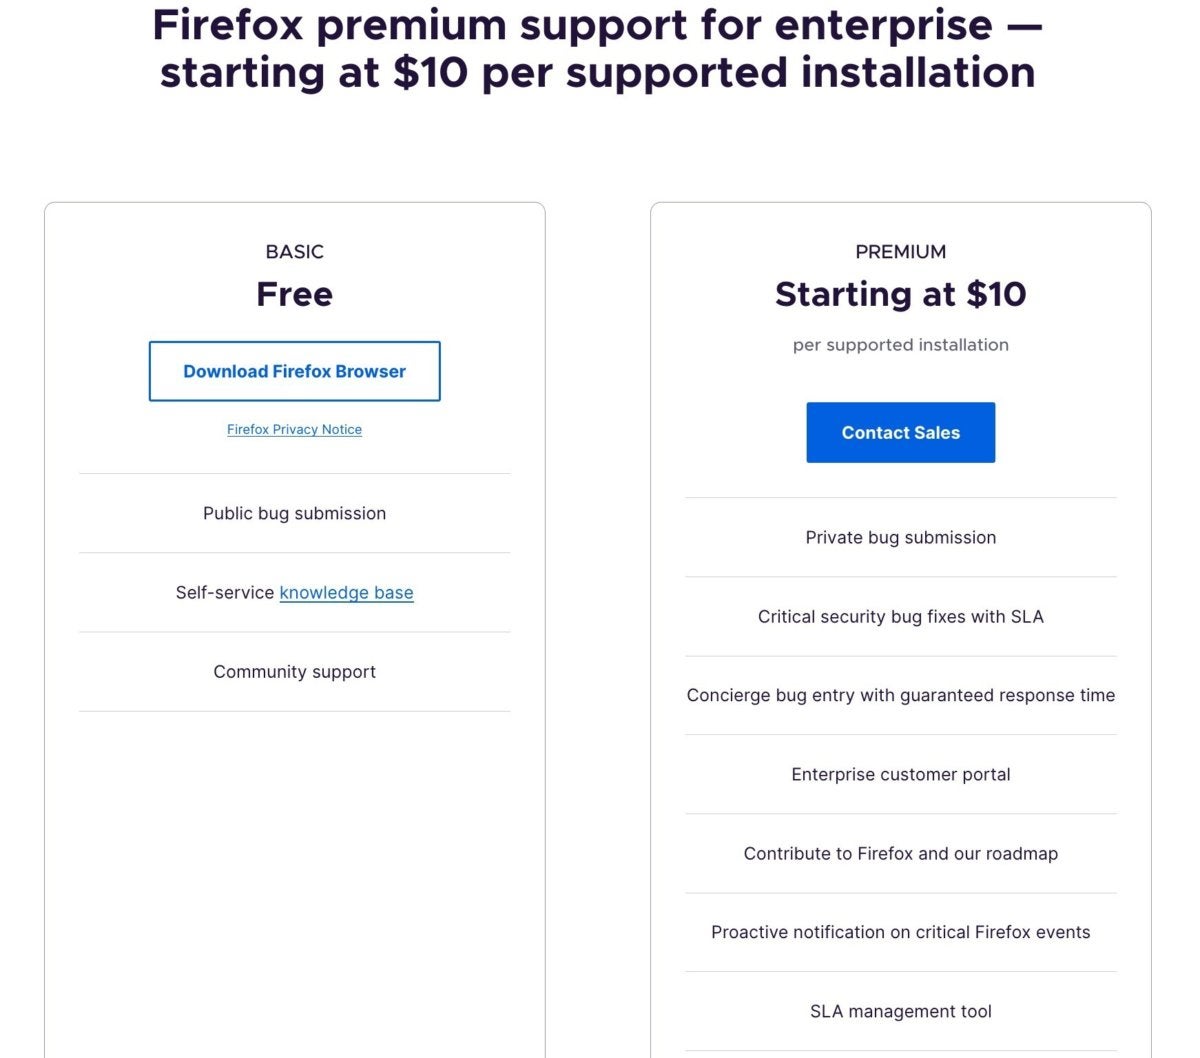 Mozilla Enterprise Client Support